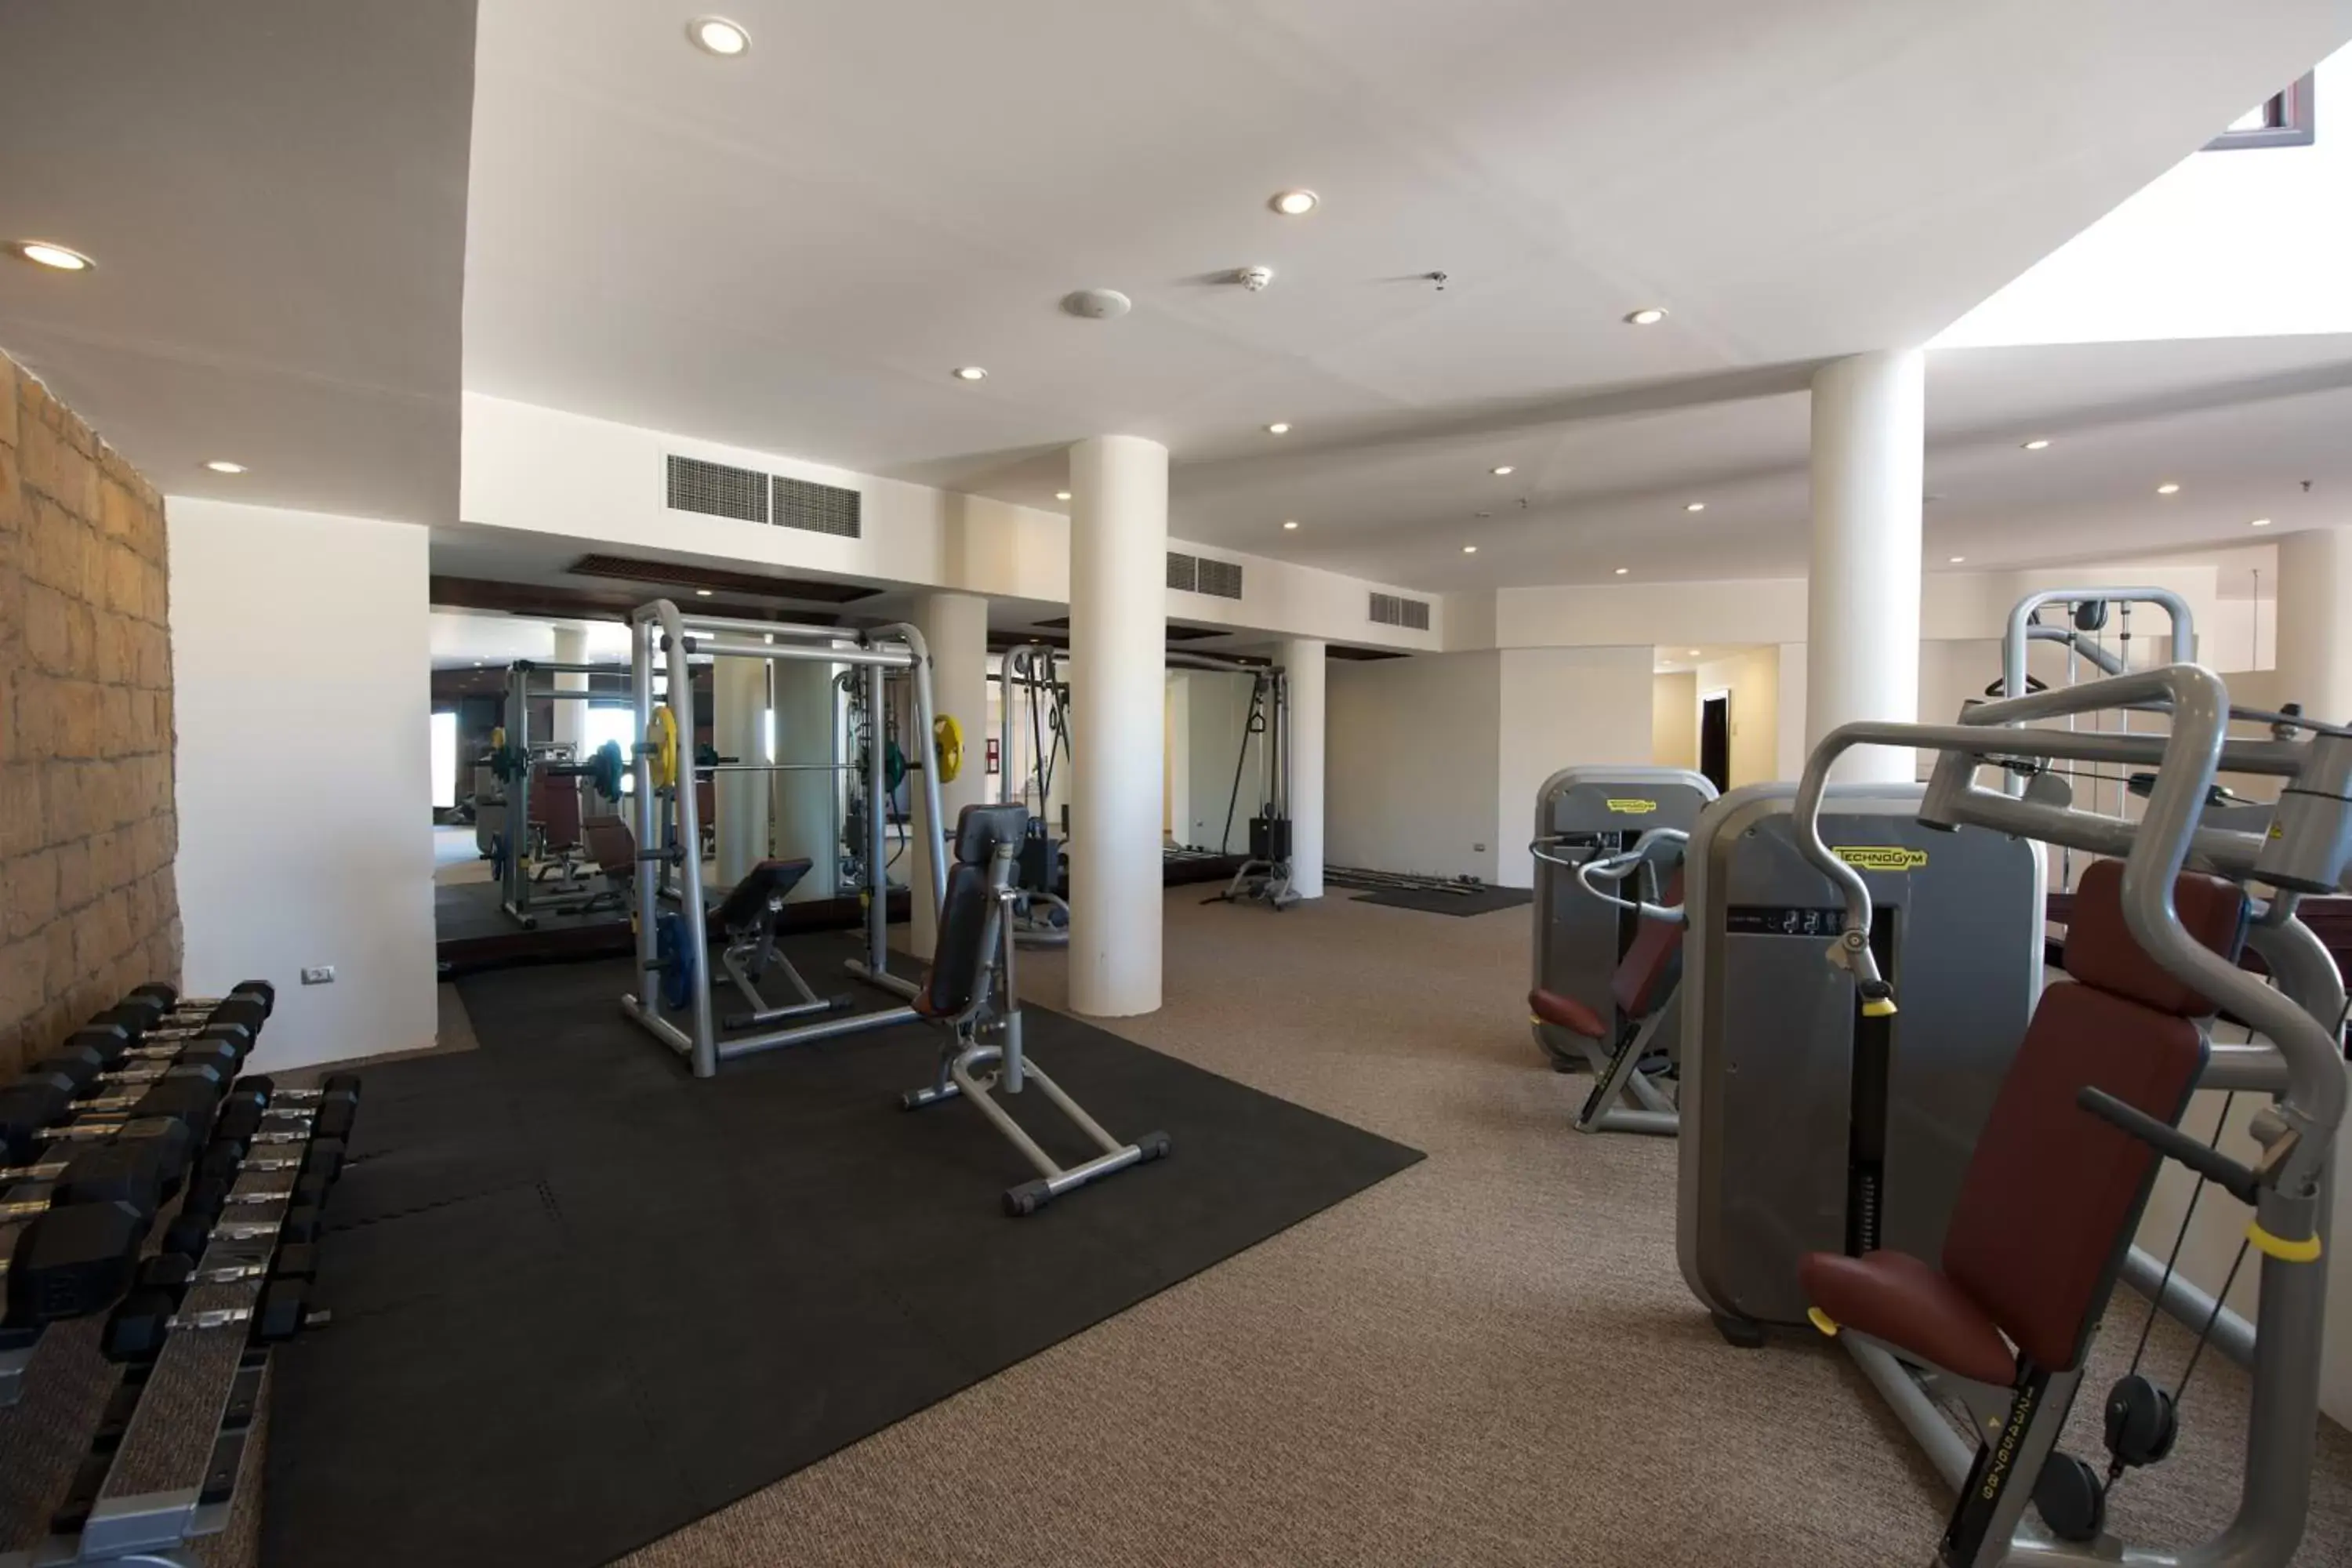 Fitness centre/facilities, Fitness Center/Facilities in Fort Arabesque Resort, Spa & Villas